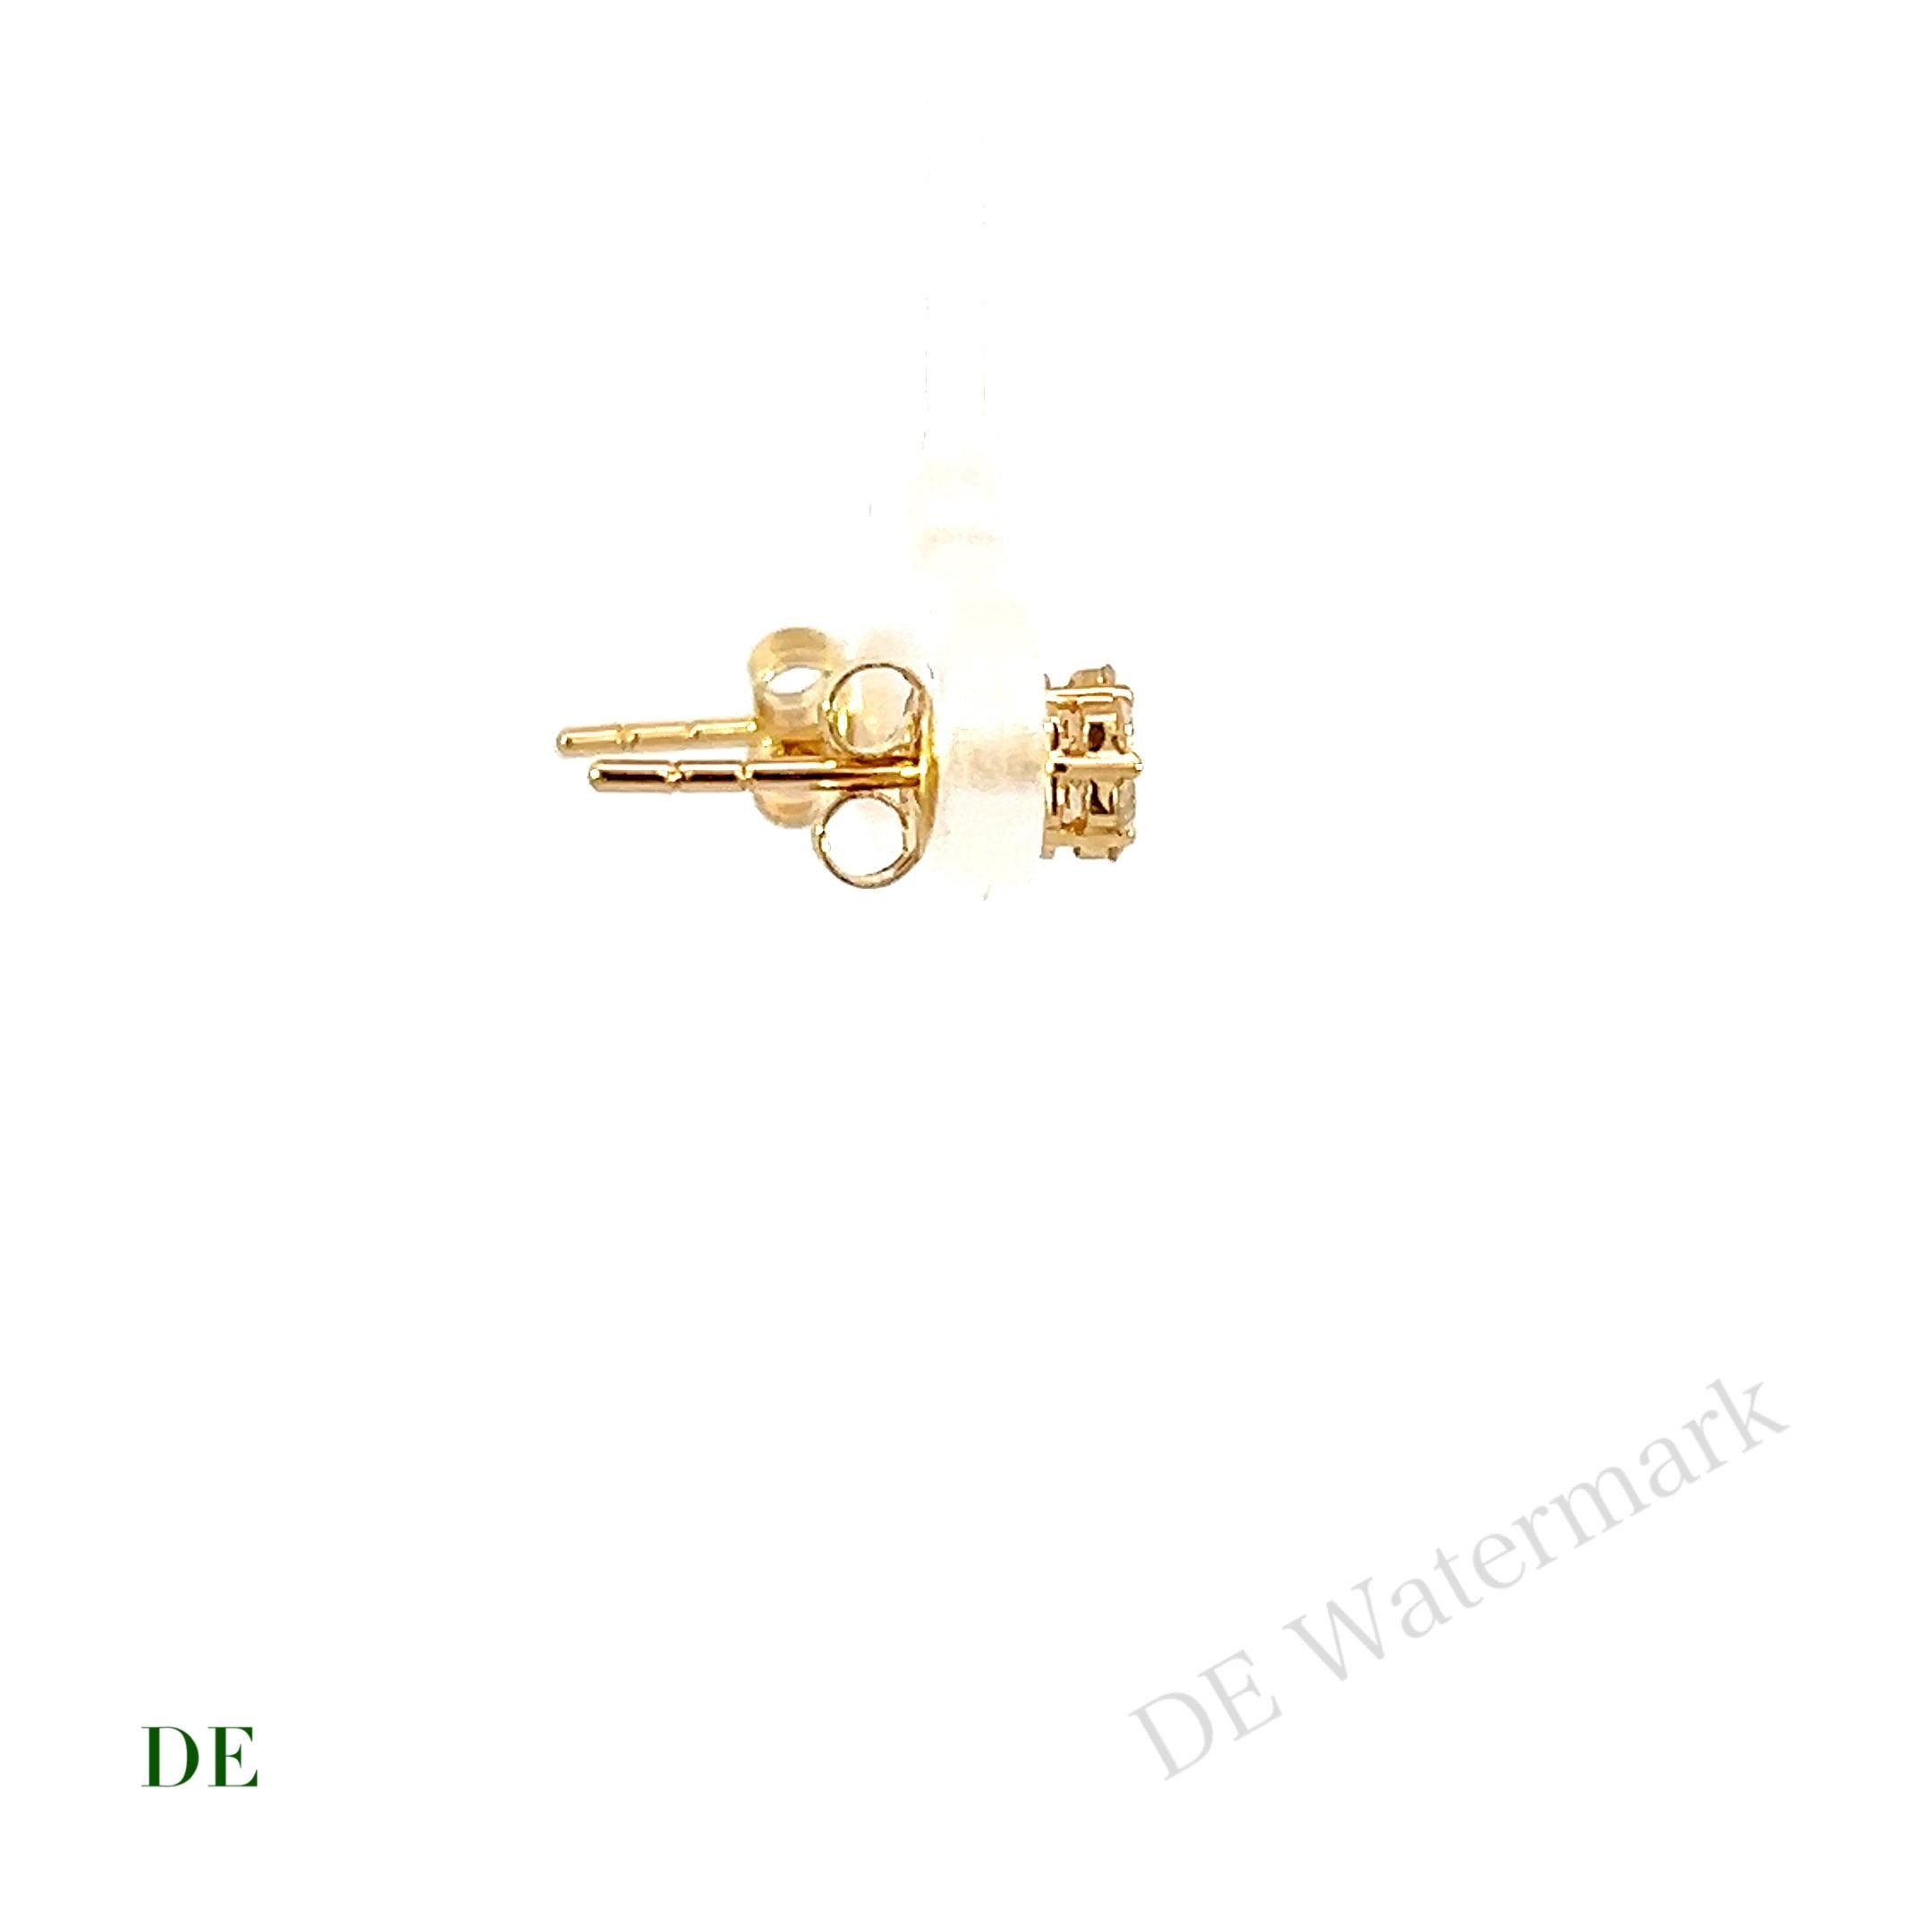 Boucle d'oreille en or jaune 14k Minimaliste .28 Carat Diamond Cluster Earring

Nous vous présentons nos boucles d'oreilles minimales en or jaune 14k avec diamant de 0,28 carat. Ces boucles d'oreilles sont un mélange parfait de simplicité et